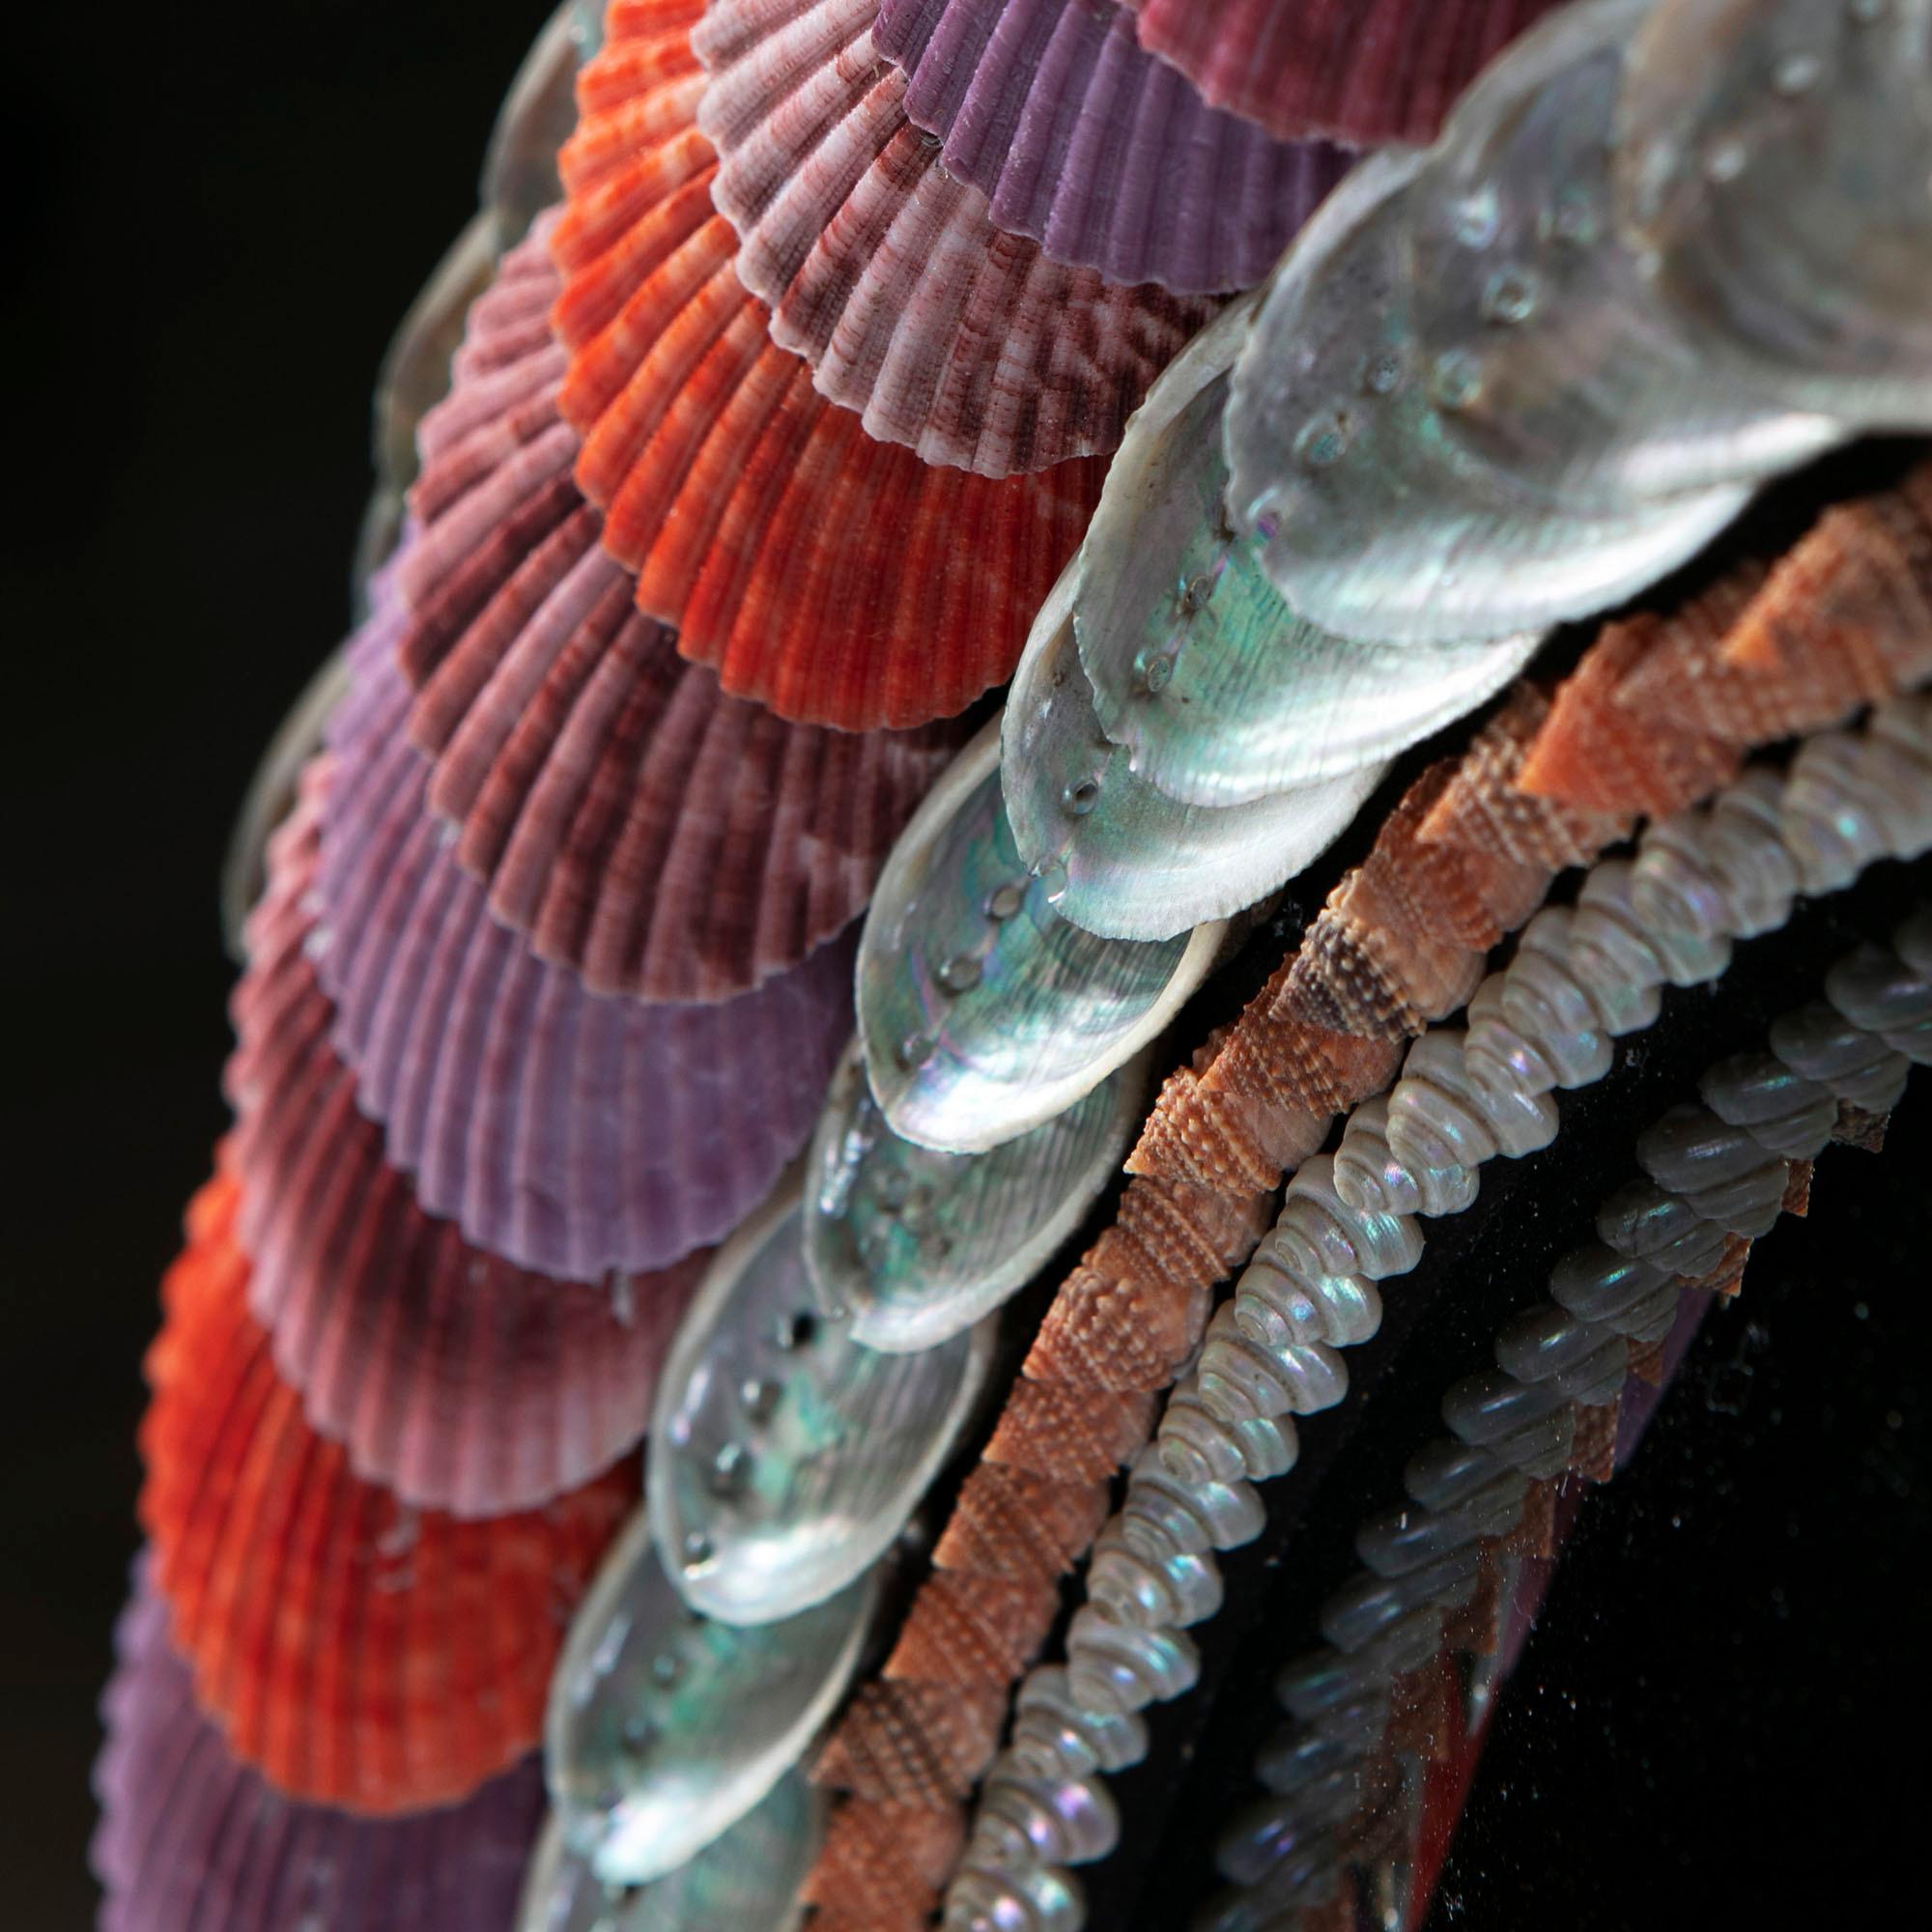 Ein runder Muschelspiegel mit konvexer Spiegelplatte. Der Rand ist durchgehend mit Muscheln in verschiedenen Rot- und Violetttönen verziert. 

Von Tess Morley.